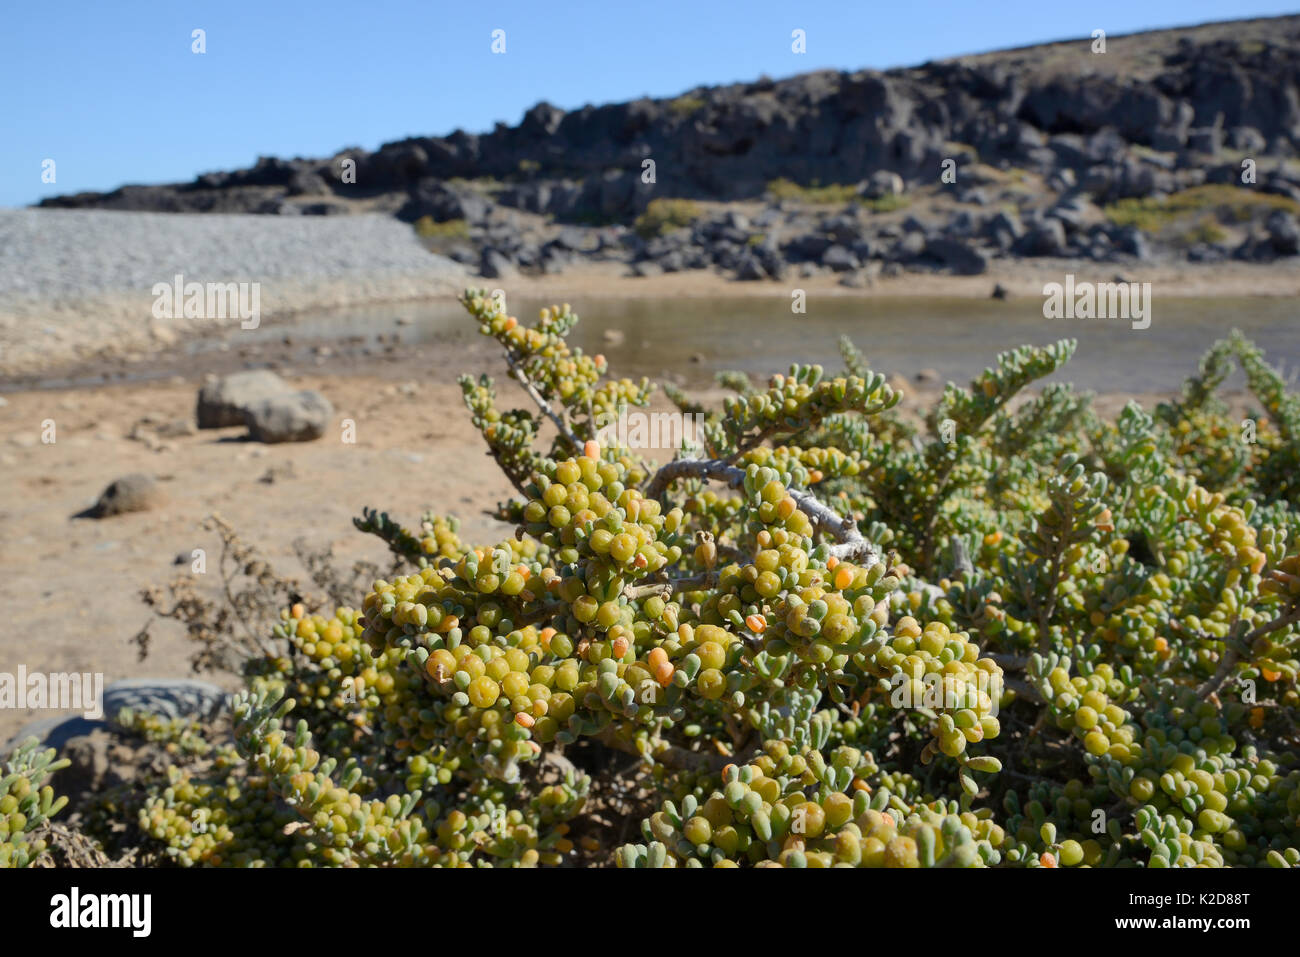 Mare di uva (Zygophyllum / Tetraena fontanesii) boccola con frutti in via di sviluppo sul margine di una spiaggia sabbiosa laguna costiera, Tenerife, maggio. Foto Stock